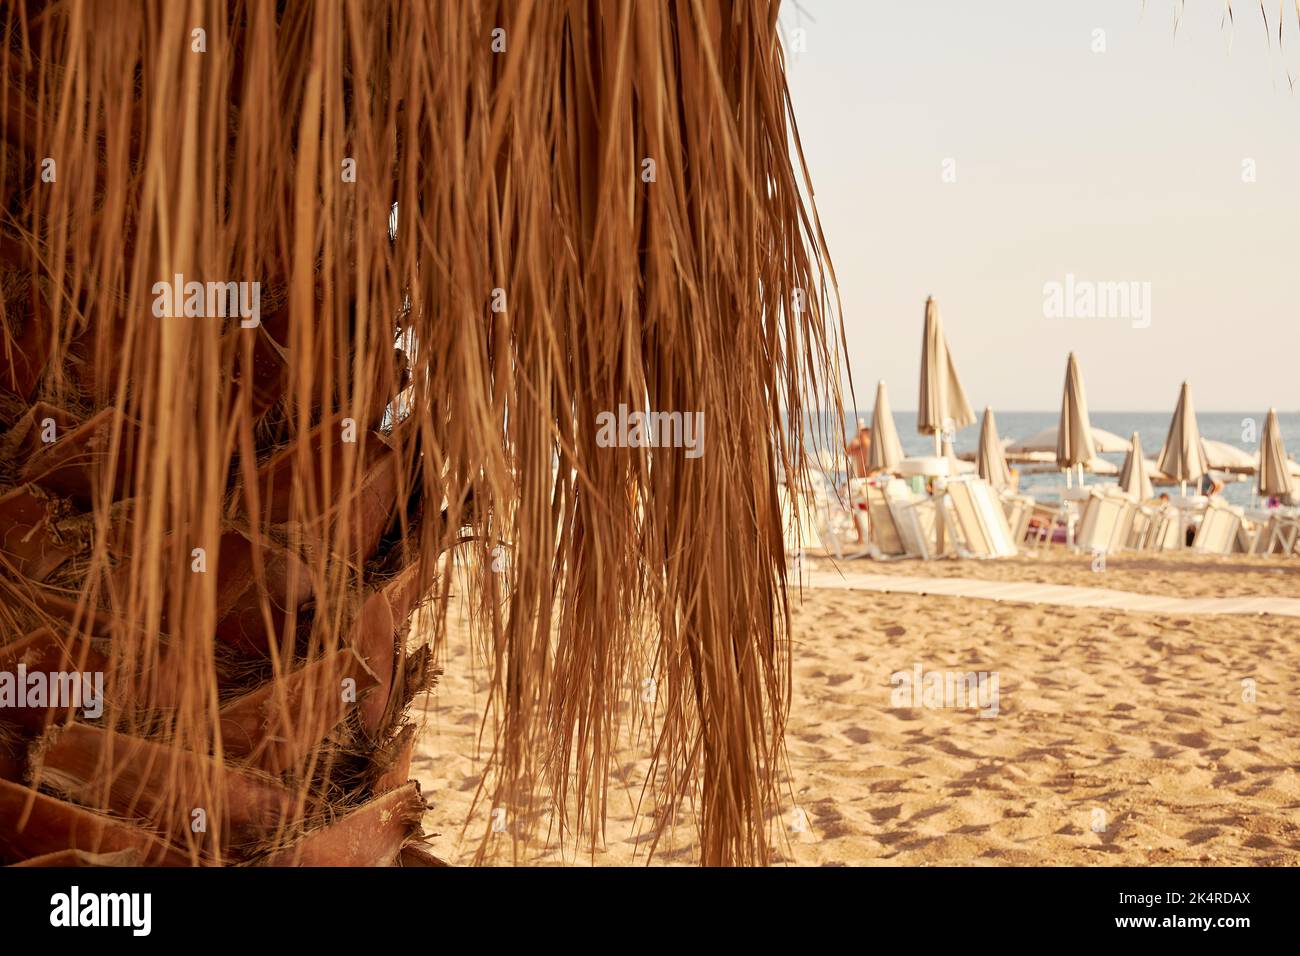 Le palmier sec et la plage publique sur le sable en arrière-plan. Resort et vacances arrière-plans Banque D'Images